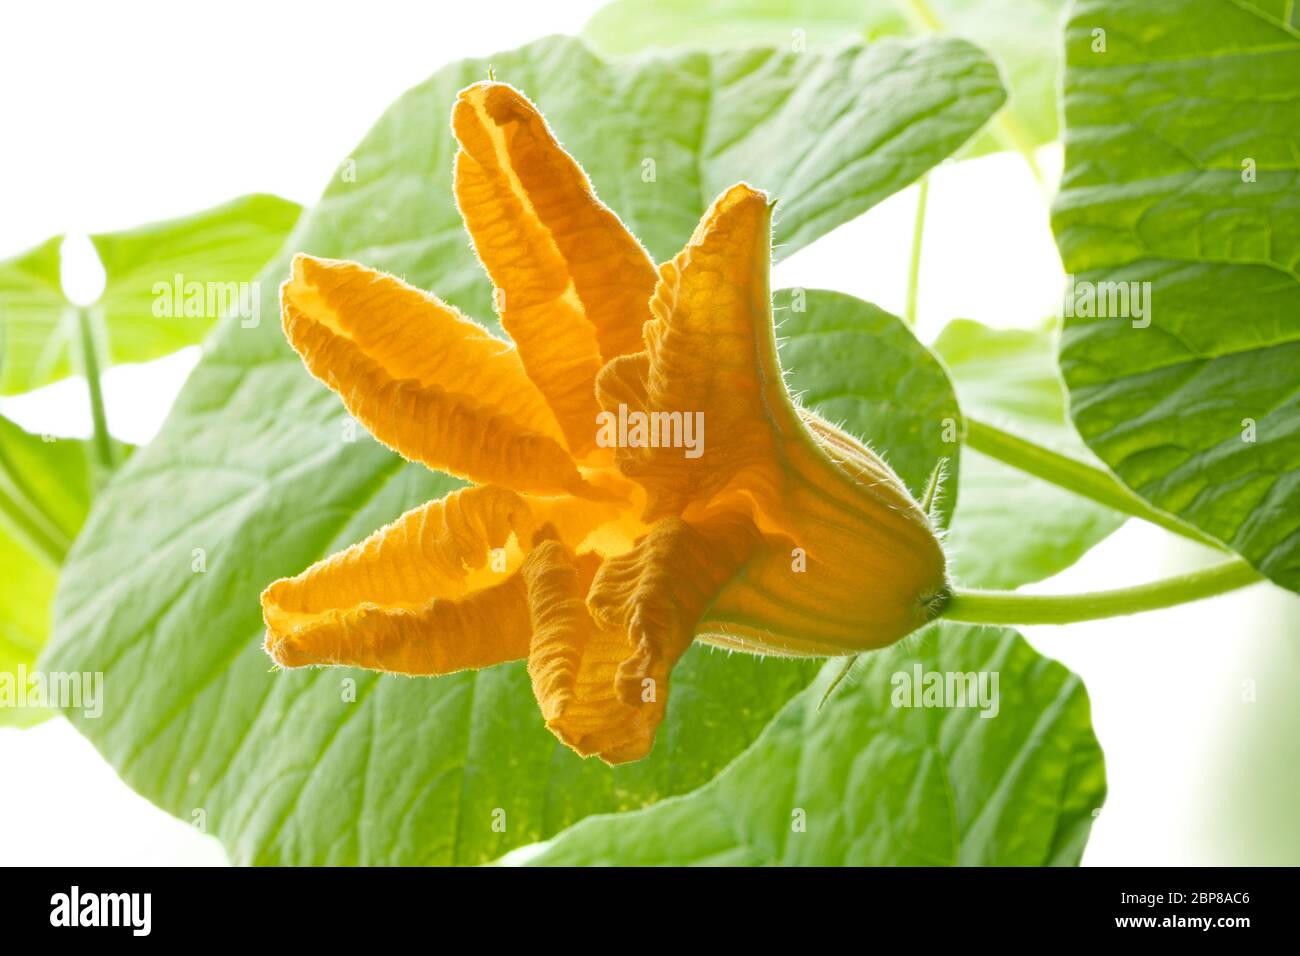 Flor de calabaza amarilla fresca, cucurbita maxima, de cerca Foto de stock